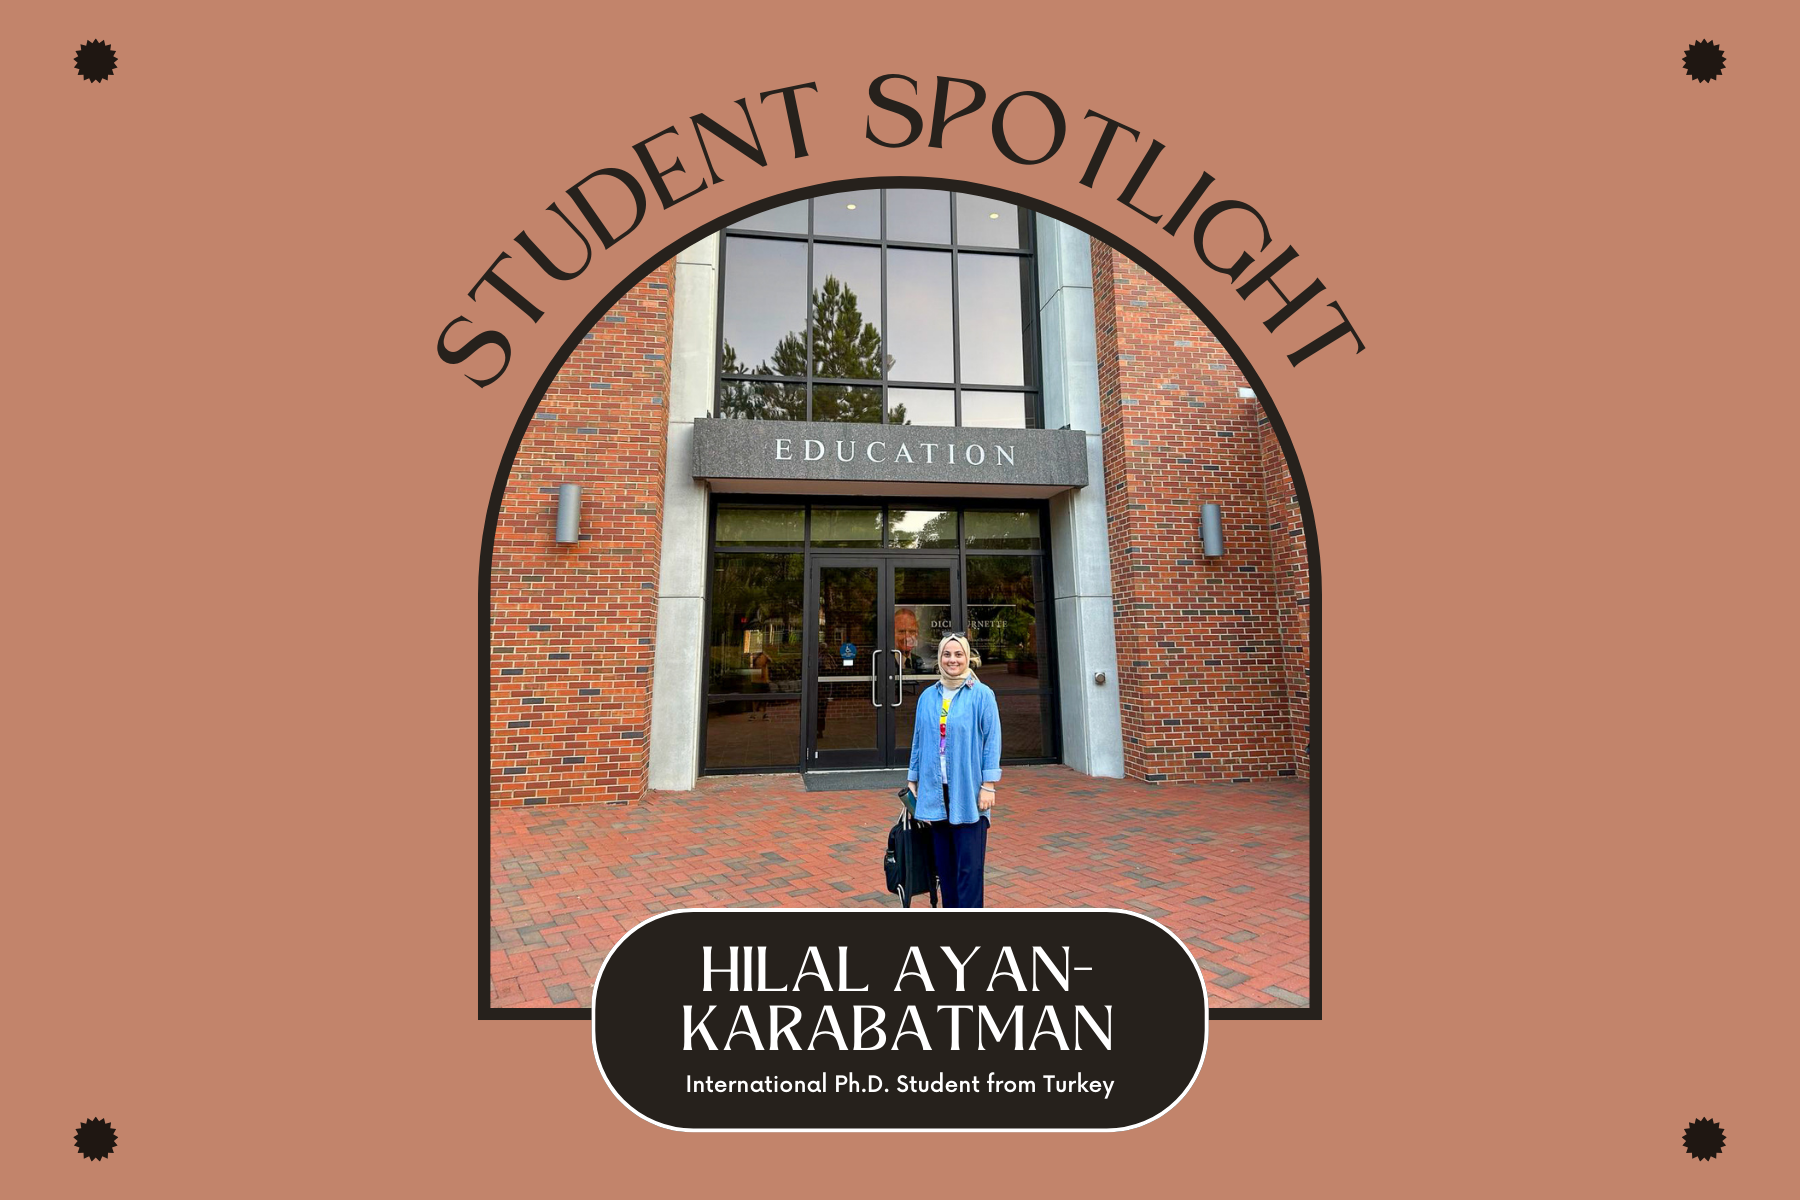 Student Spotlight: Hilal Ayan-Karabatman